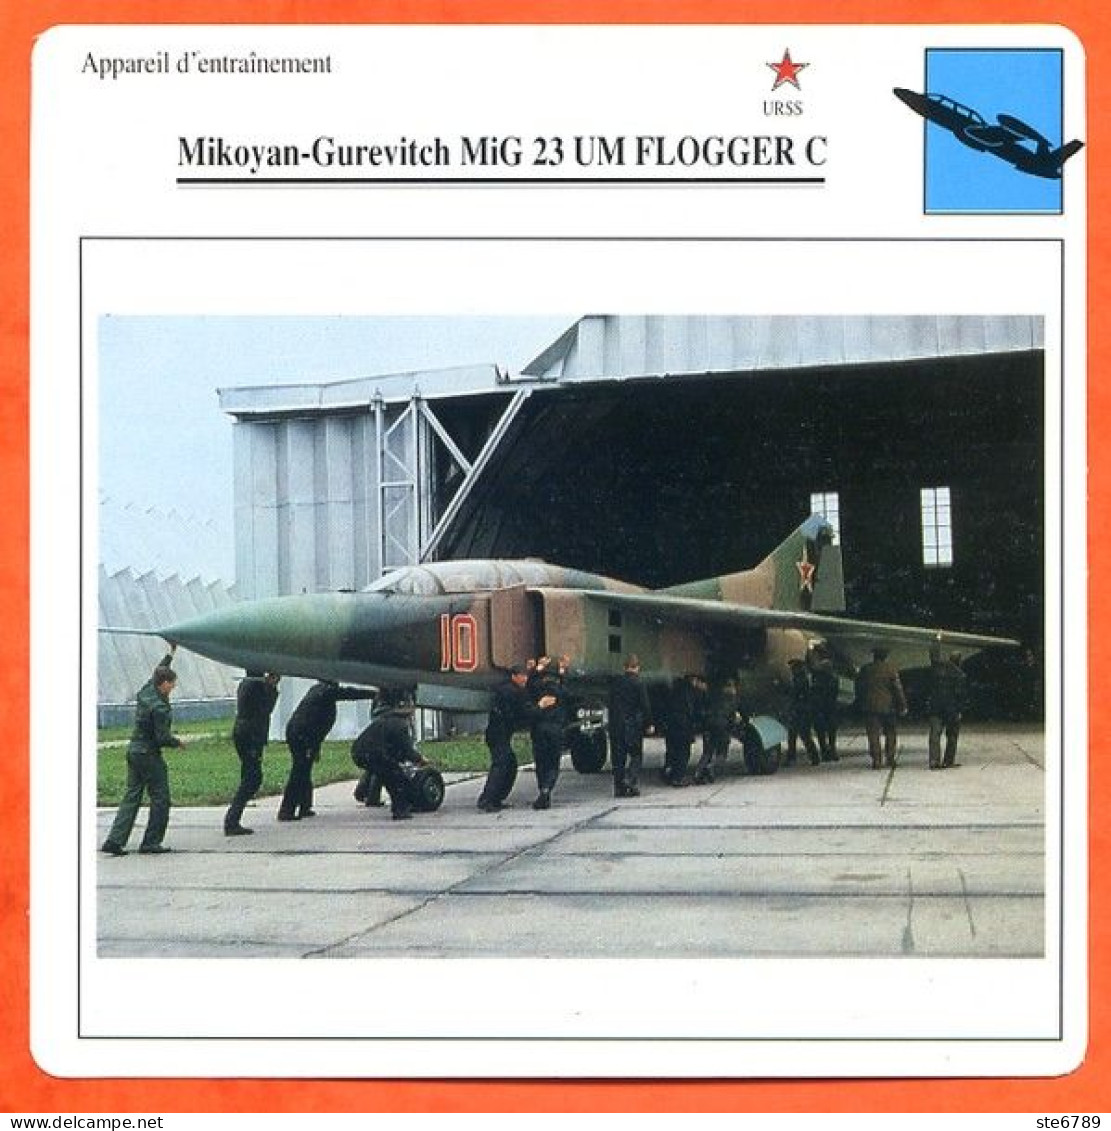 Fiche Aviation Mikoyan Gurevitch MiG 23 UM FLOGGER C  / Avion Appareil D'entrainement URSS Avions - Airplanes